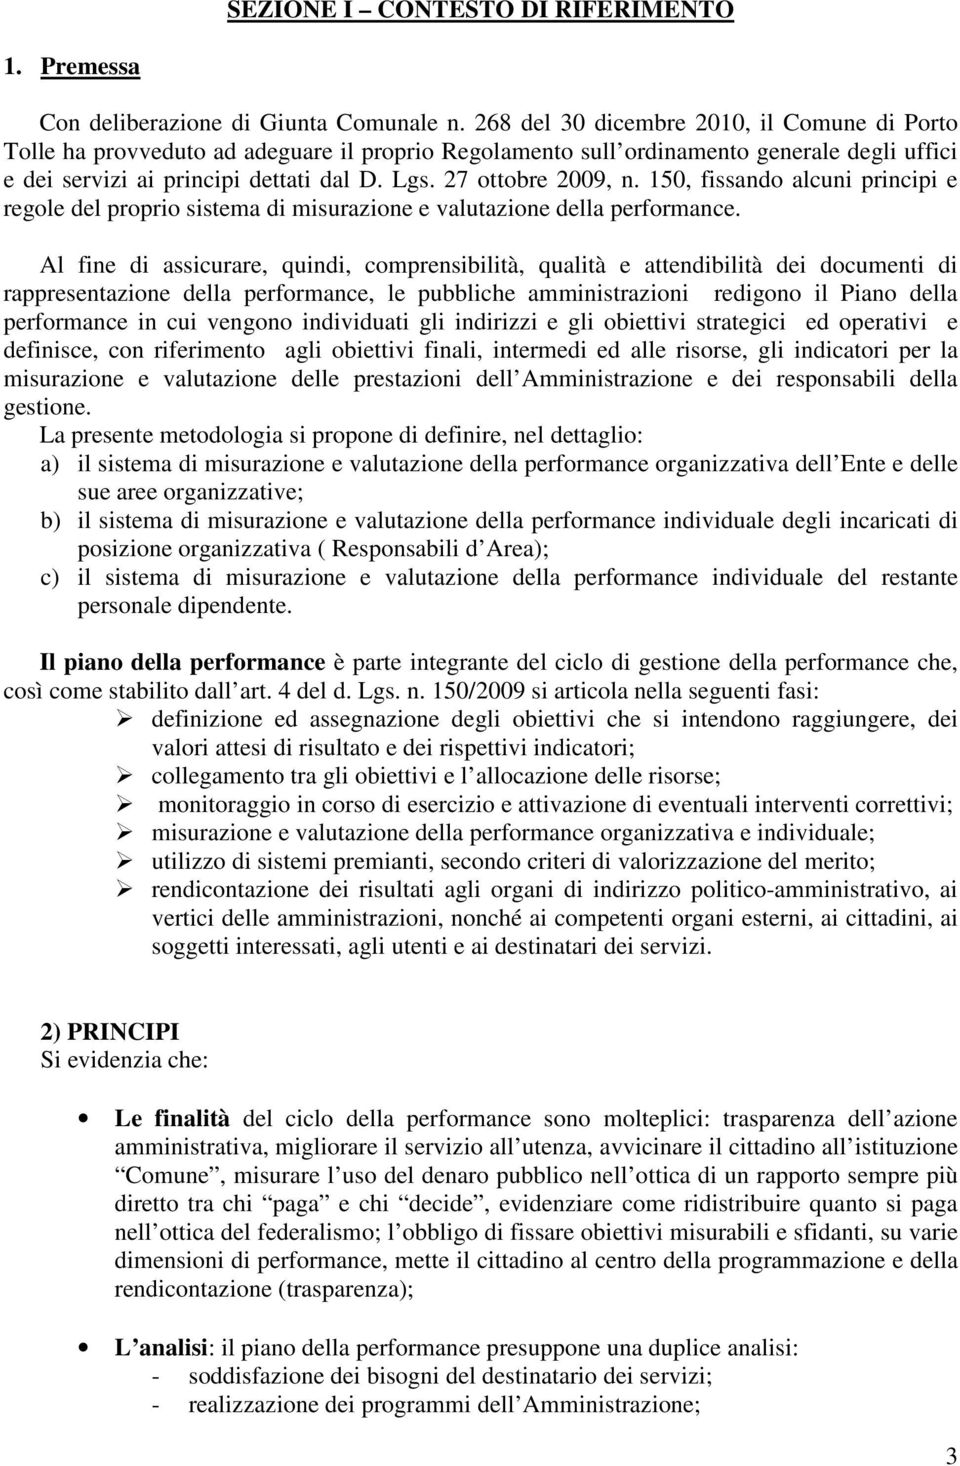 27 ottobre 2009, n. 150, fissando alcuni principi e regole del proprio sistema di misurazione e valutazione della performance.